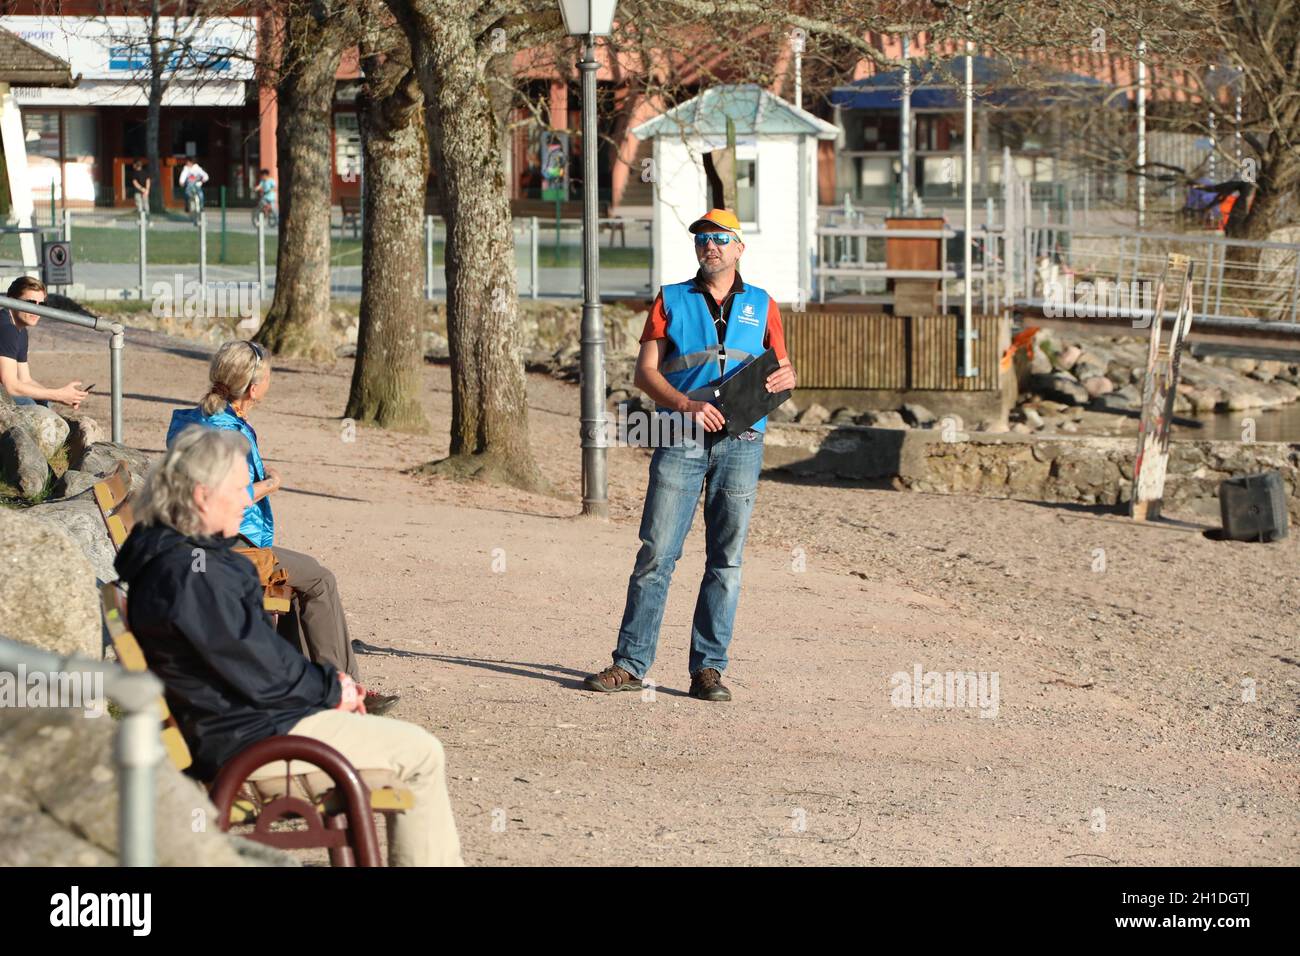 Ein Mitarbeiter der Ortspolizebehörde von Titisee-Neustadt unterhält sich mit den wenigen Besuchern am Seeufer.Menschenleer präsenert sich aktuel Banque D'Images